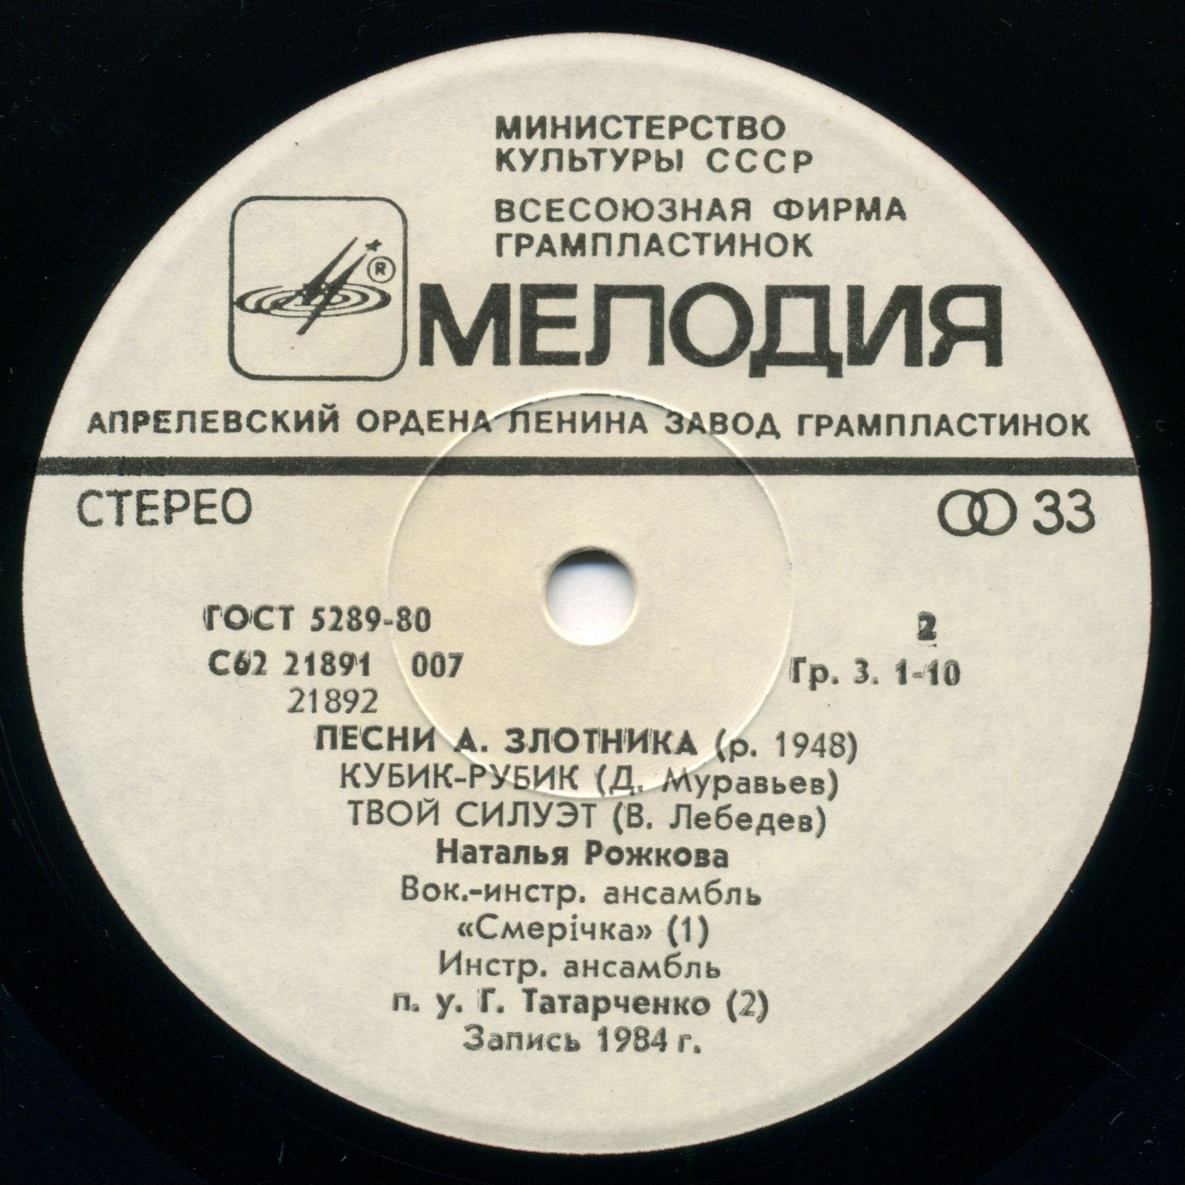 Песни А. ЗЛОТНИКА (р. 1948)